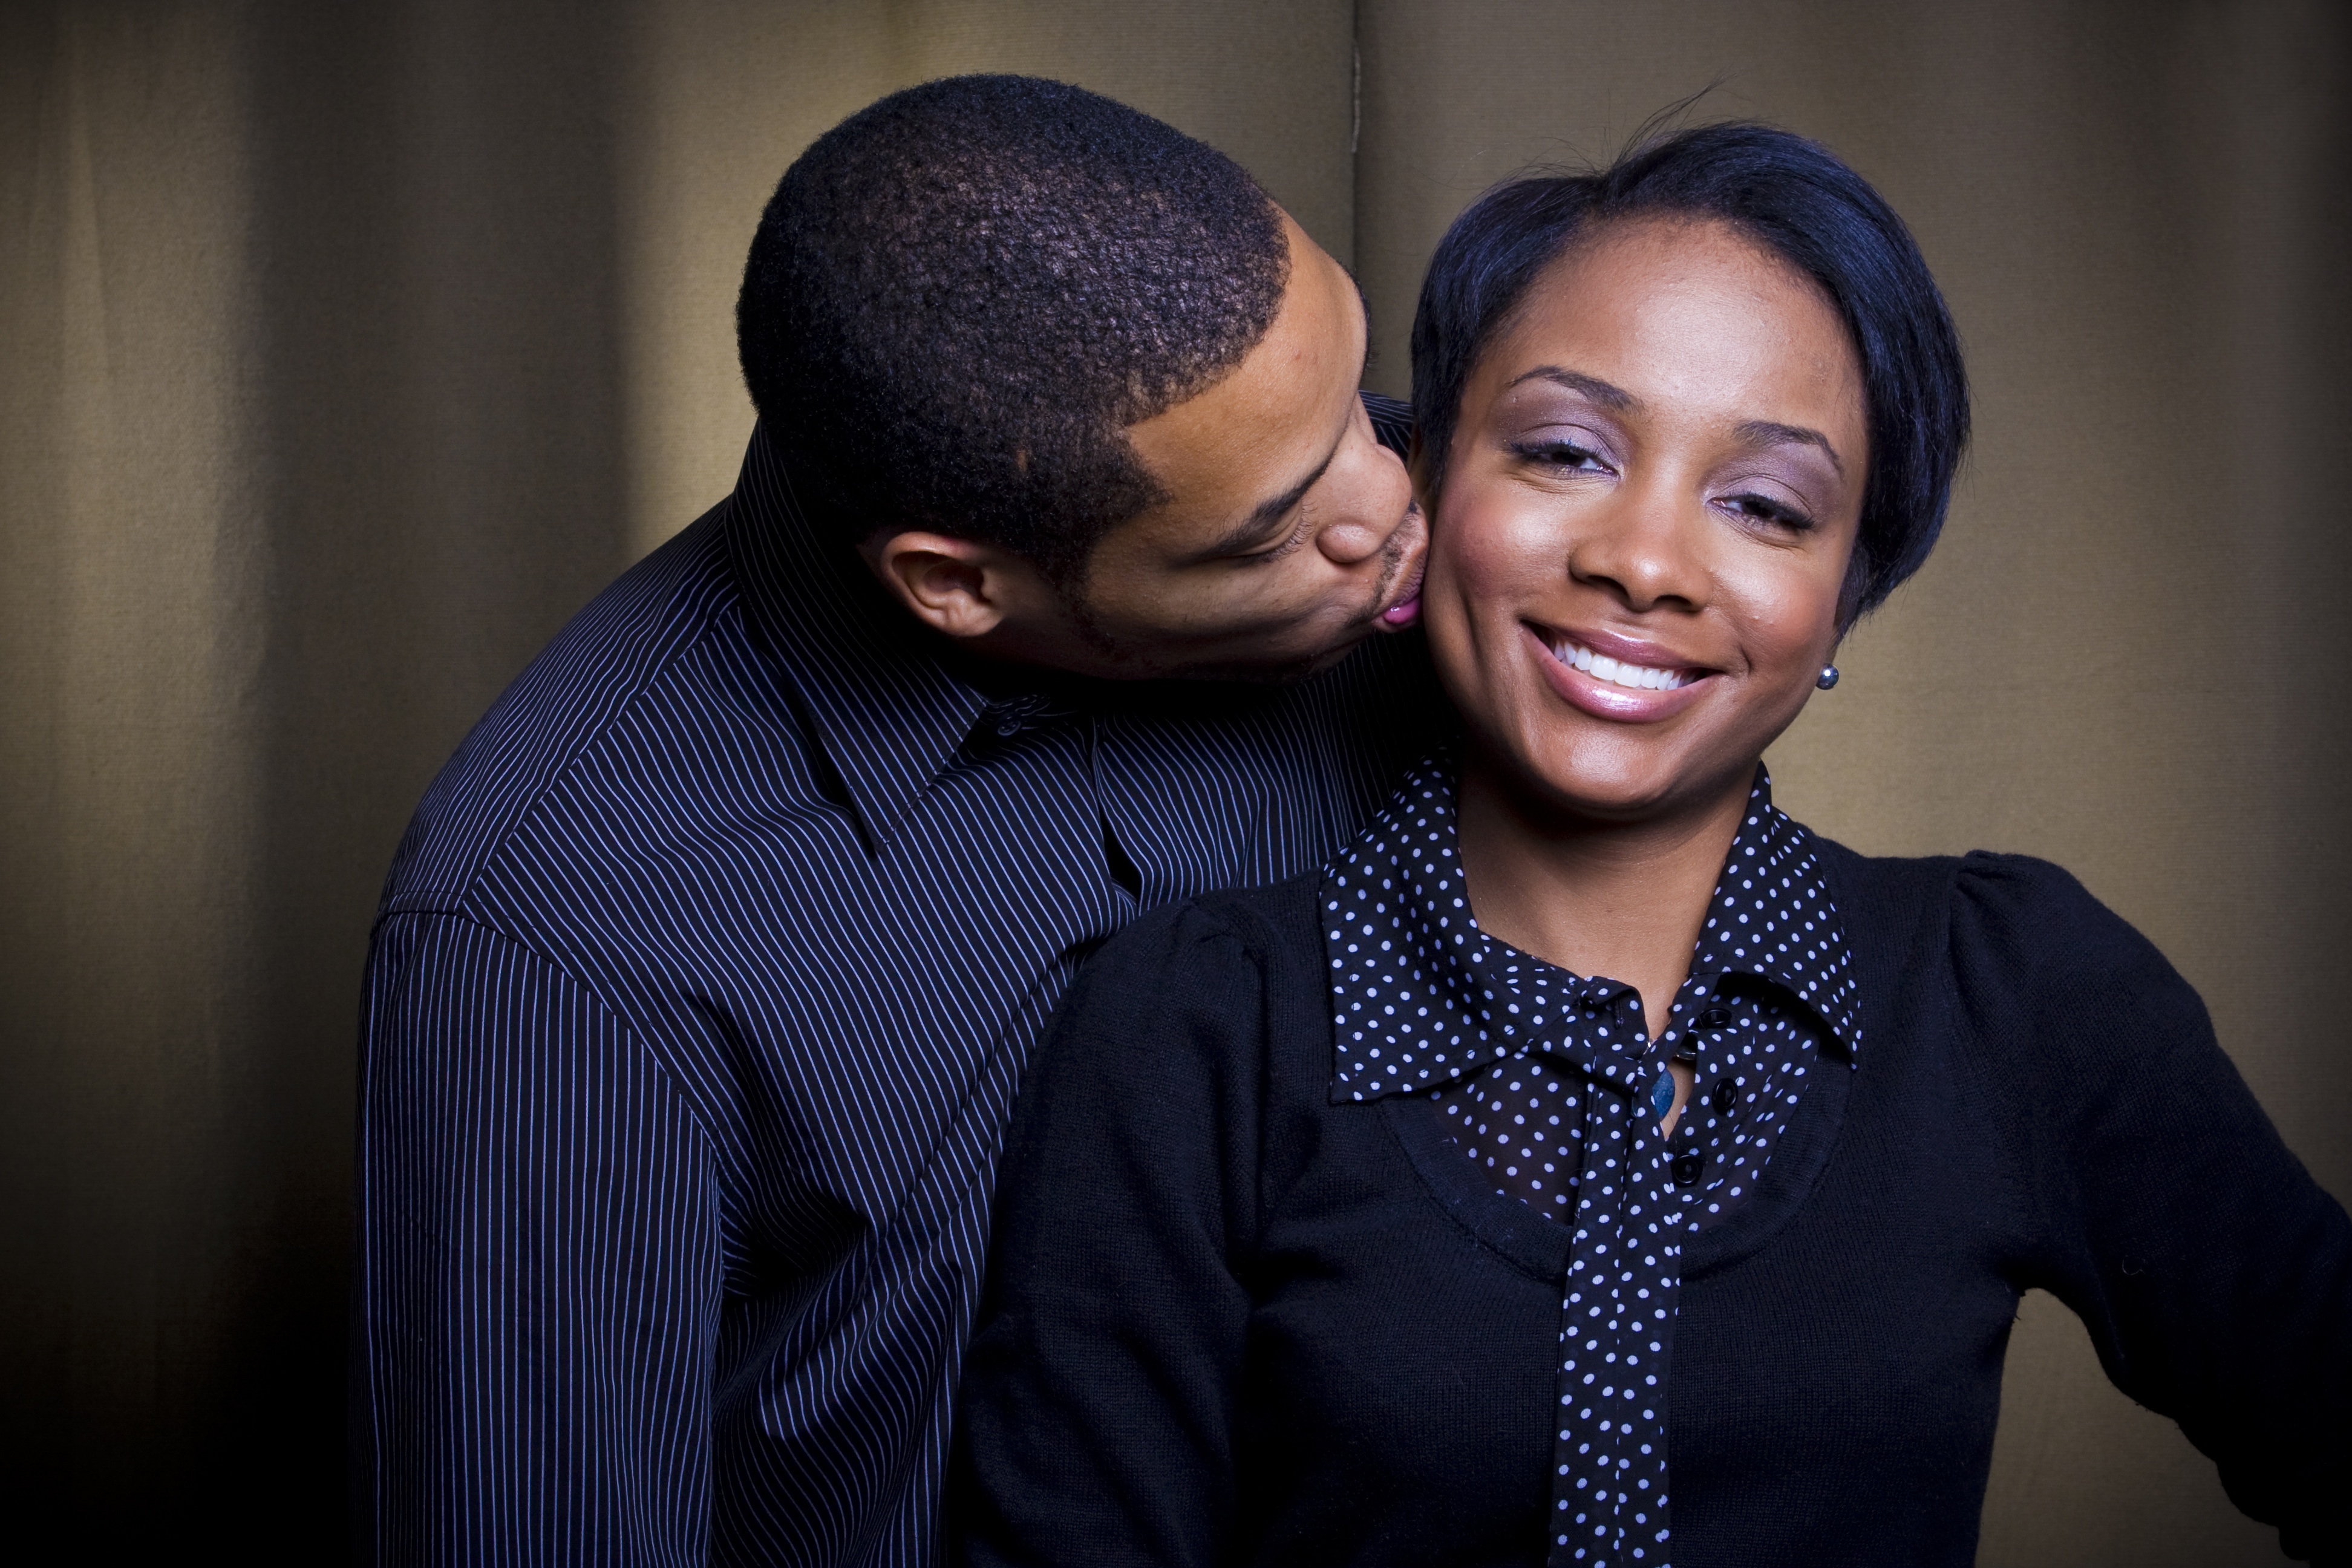 Девушка рогоносец. Жены афроамериканцев. Негр целует в щеку. Husband. Black man and Black woman.